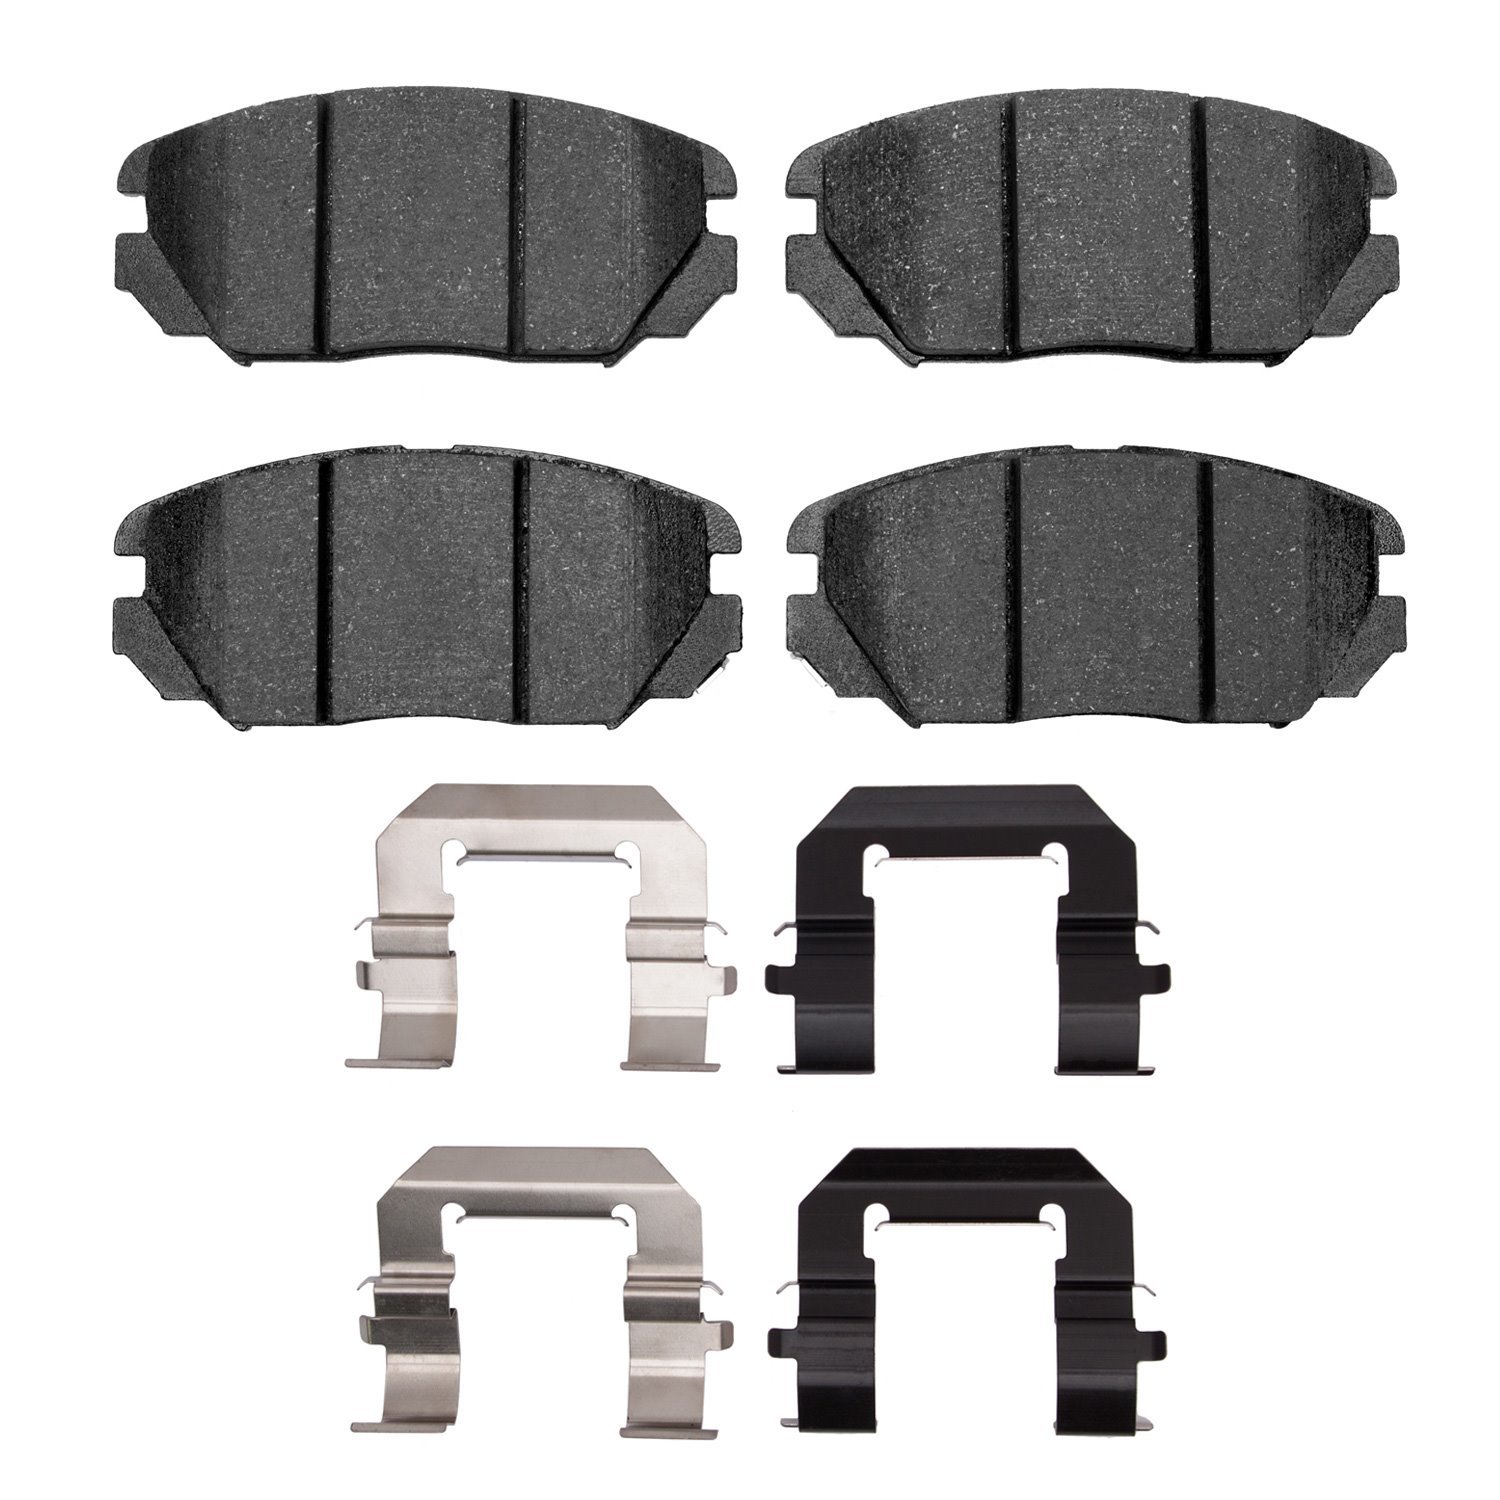 1310-1125-02 3000-Series Ceramic Brake Pads & Hardware Kit, 2010-2020 GM, Position: Front